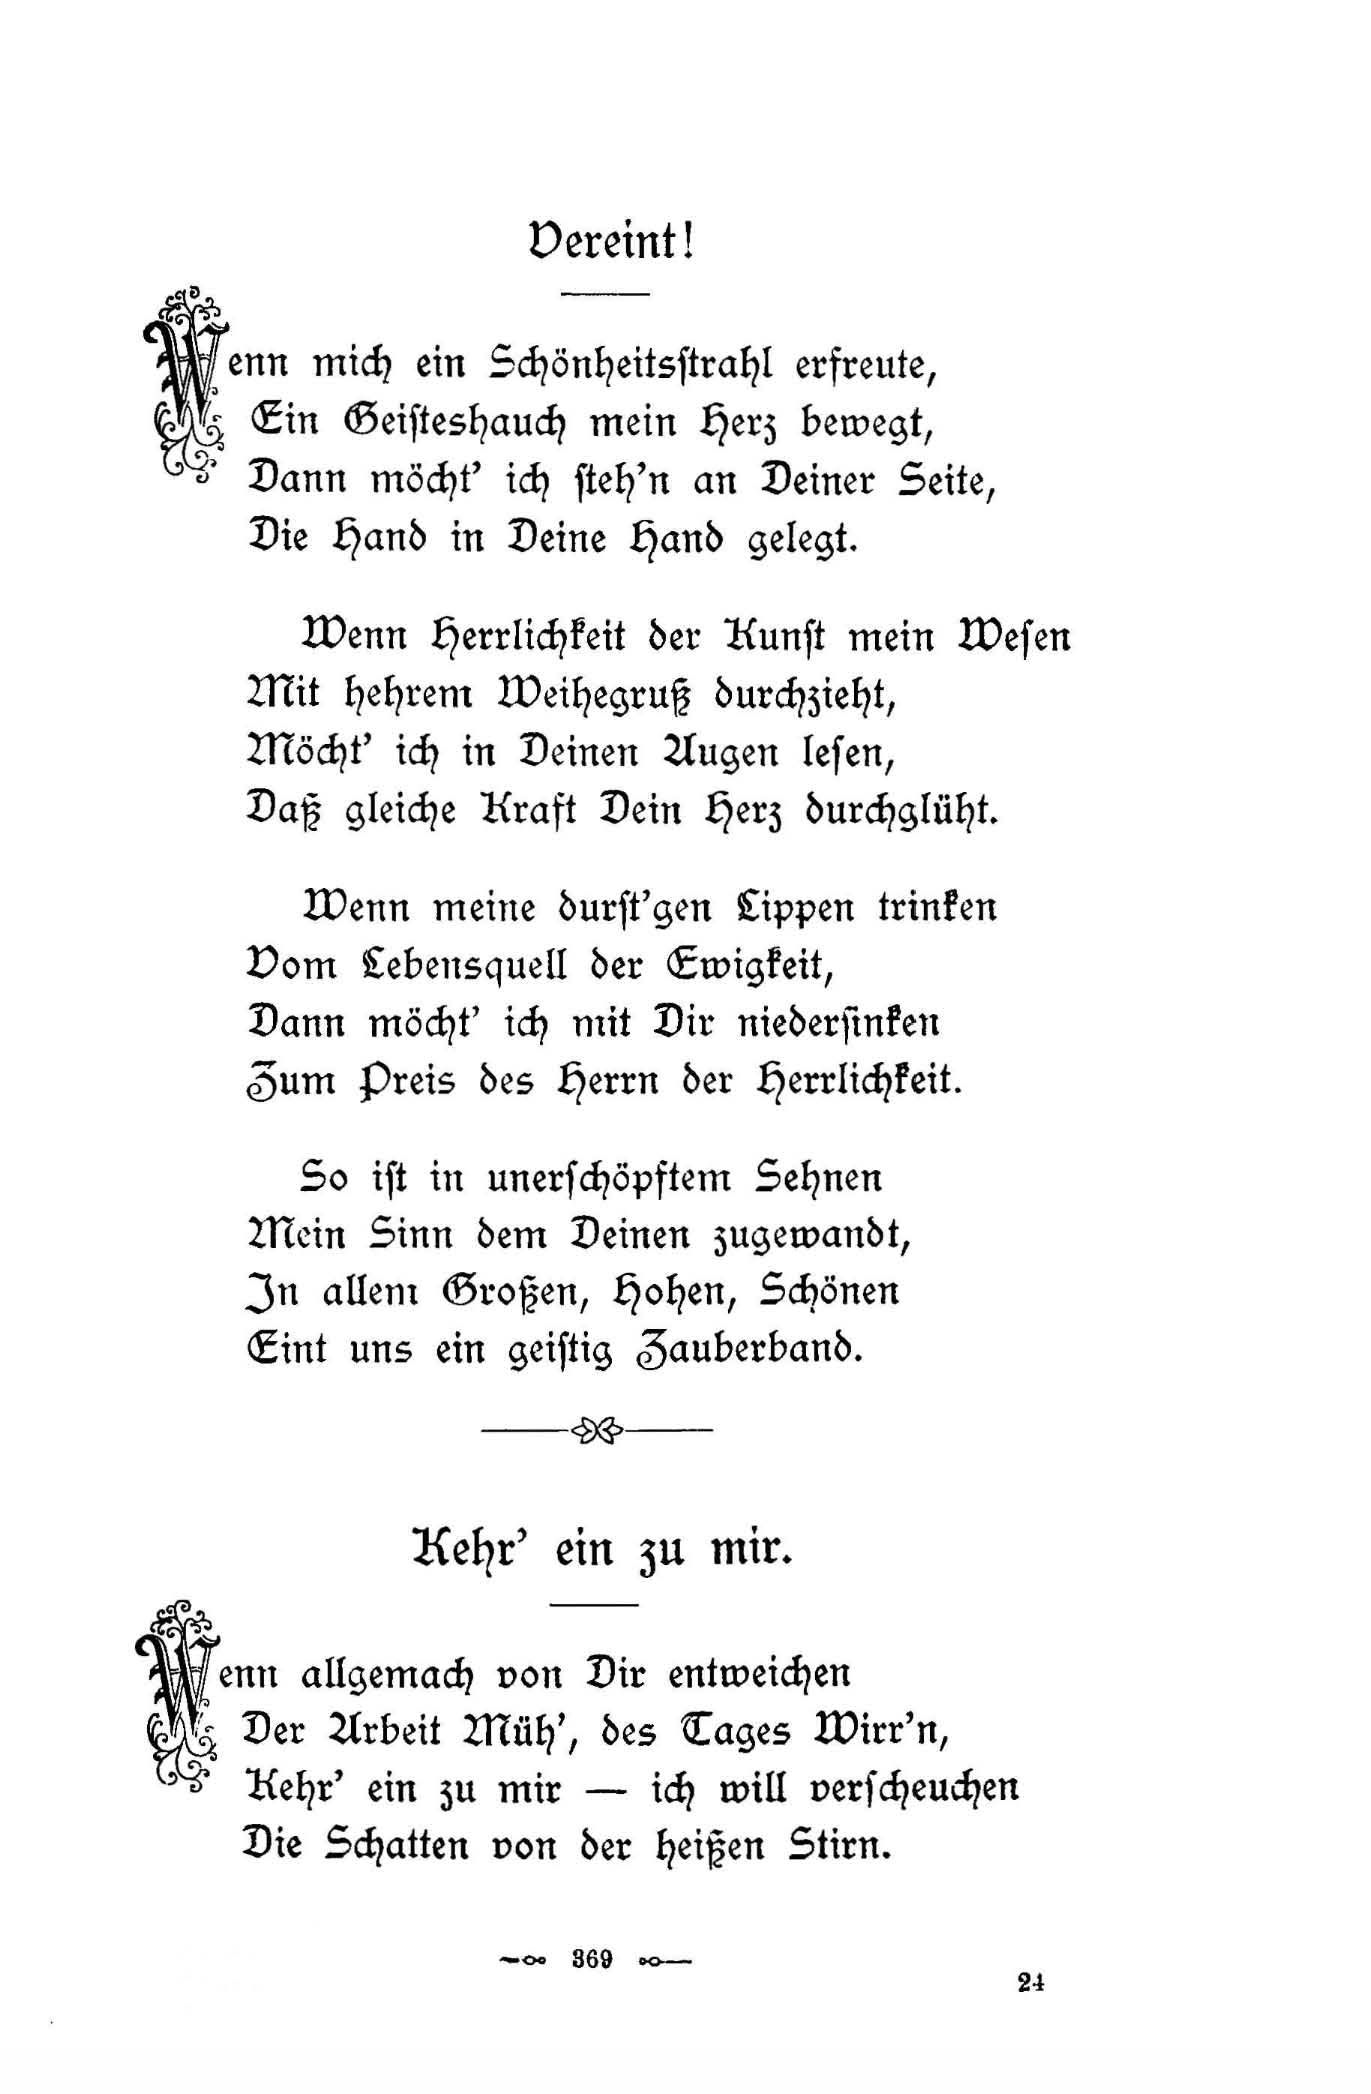 Kehr' ein zu mir (1896) | 1. (369) Main body of text